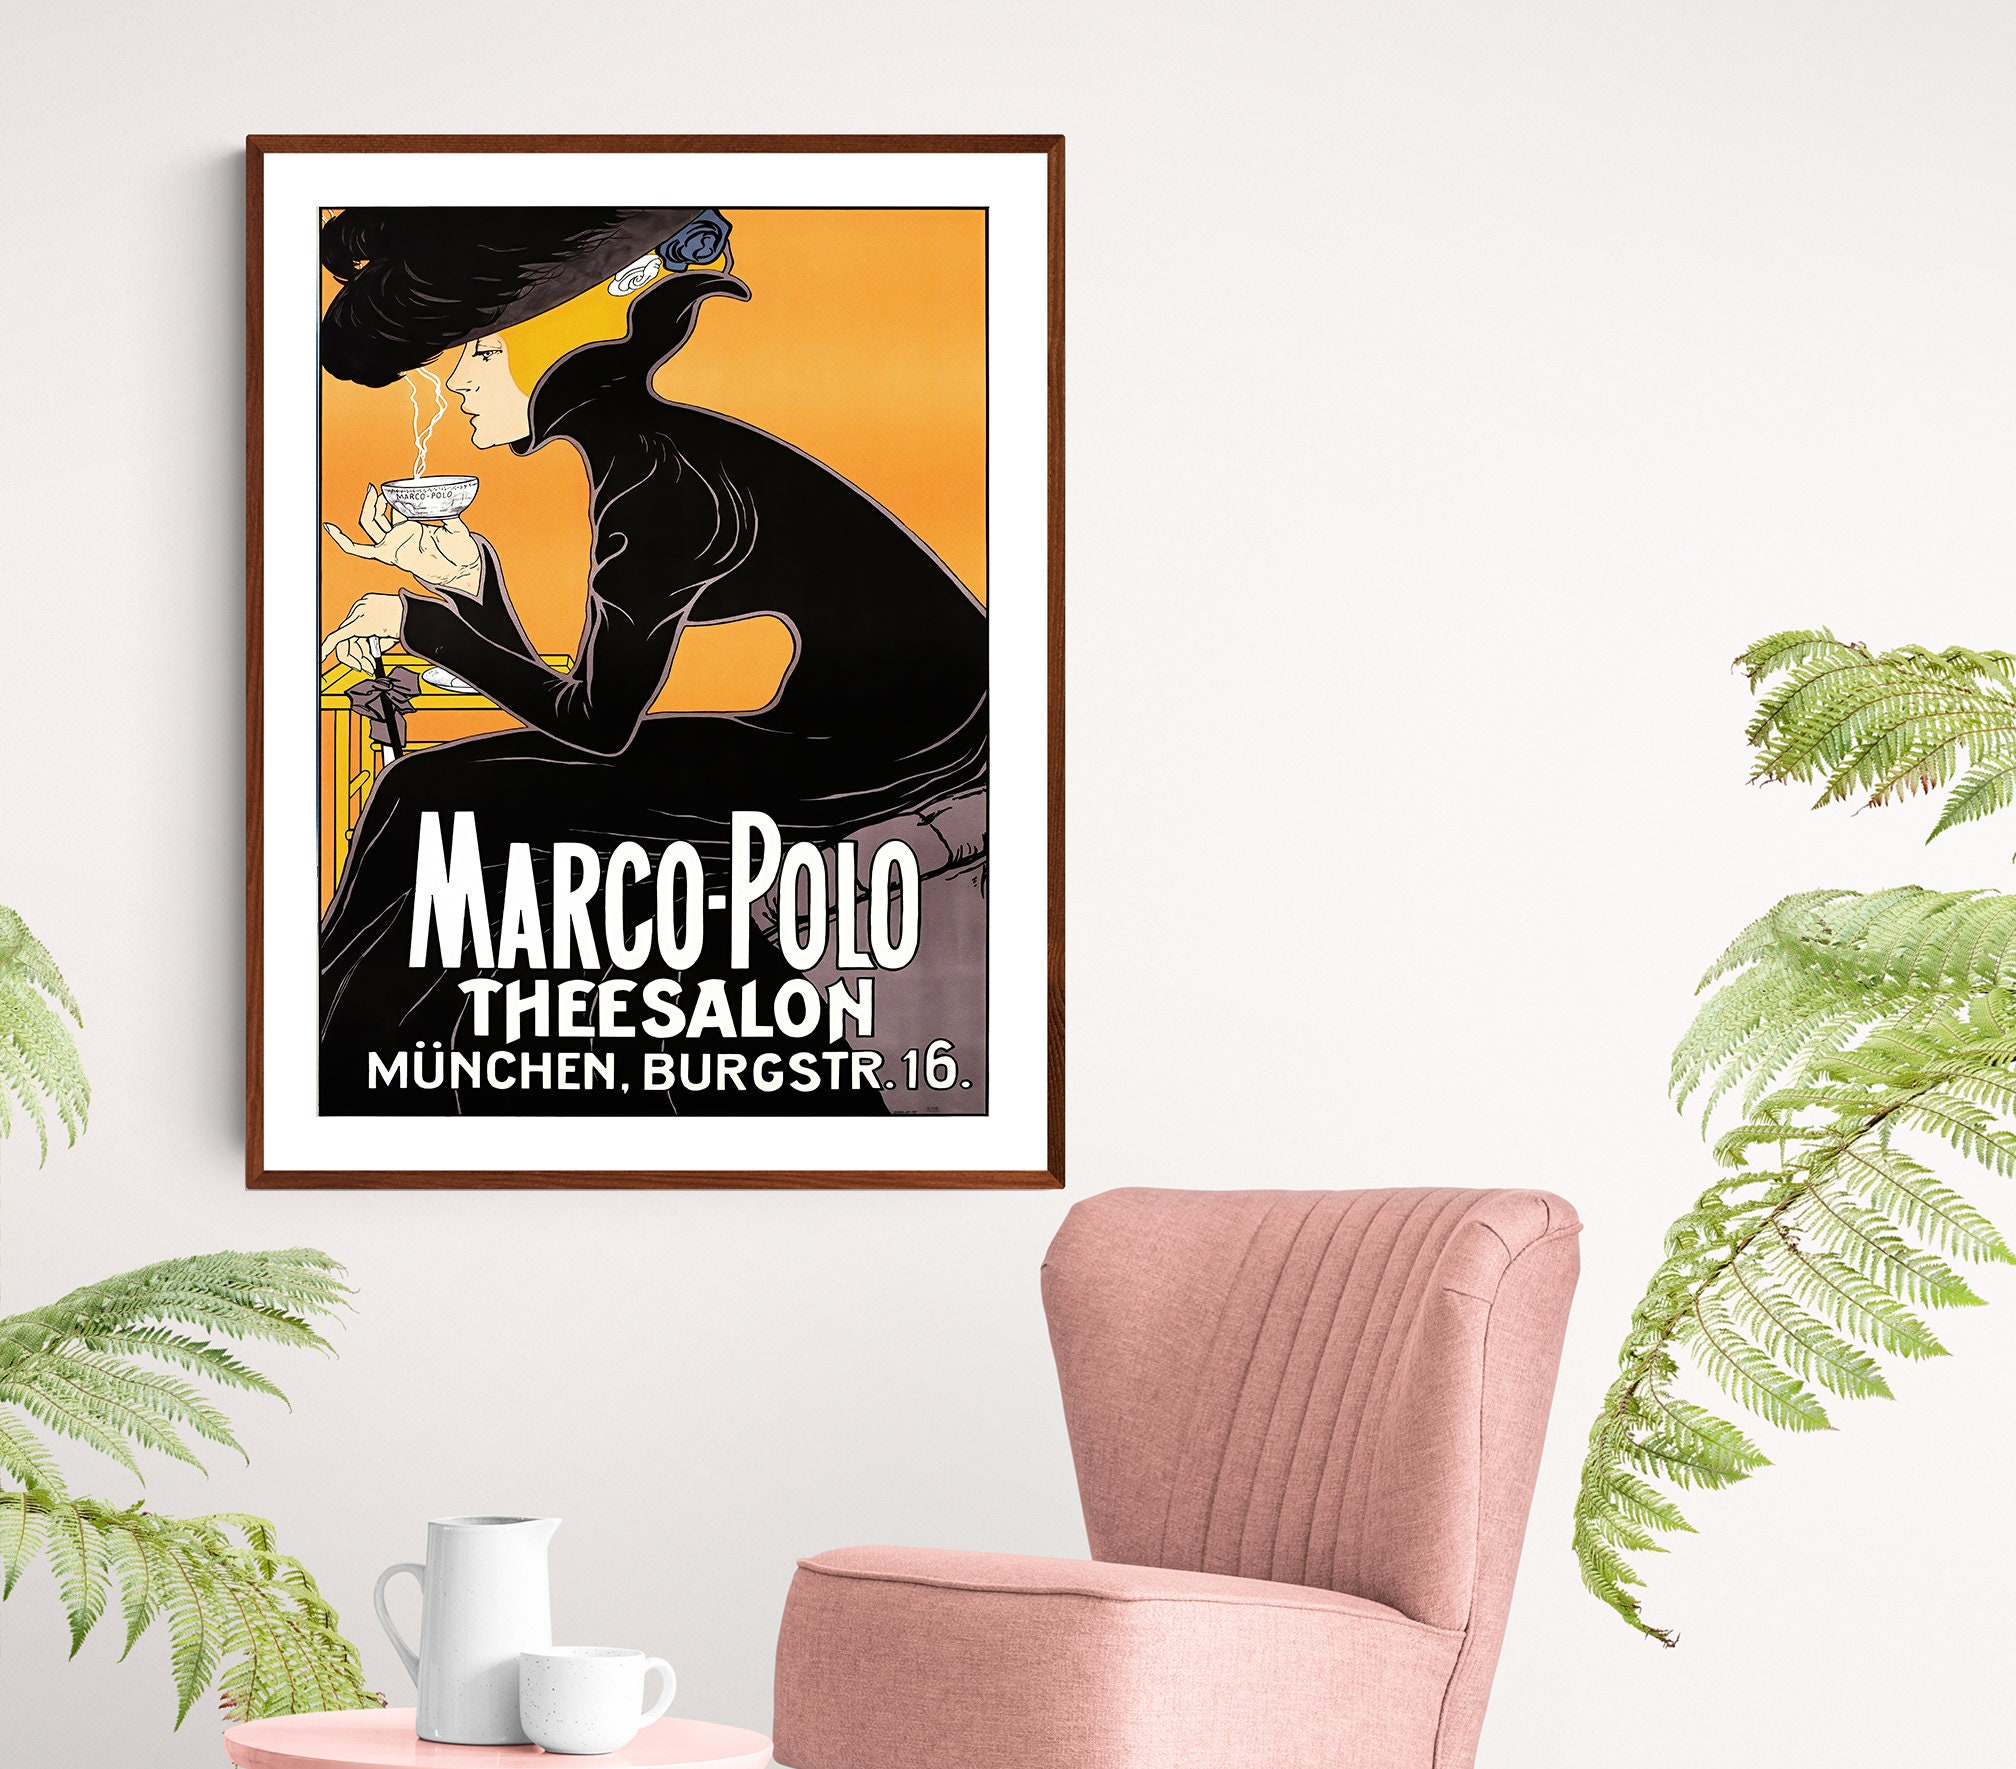 MARCO-POLO マルコポーロ フランス製 vintage メンズ コート